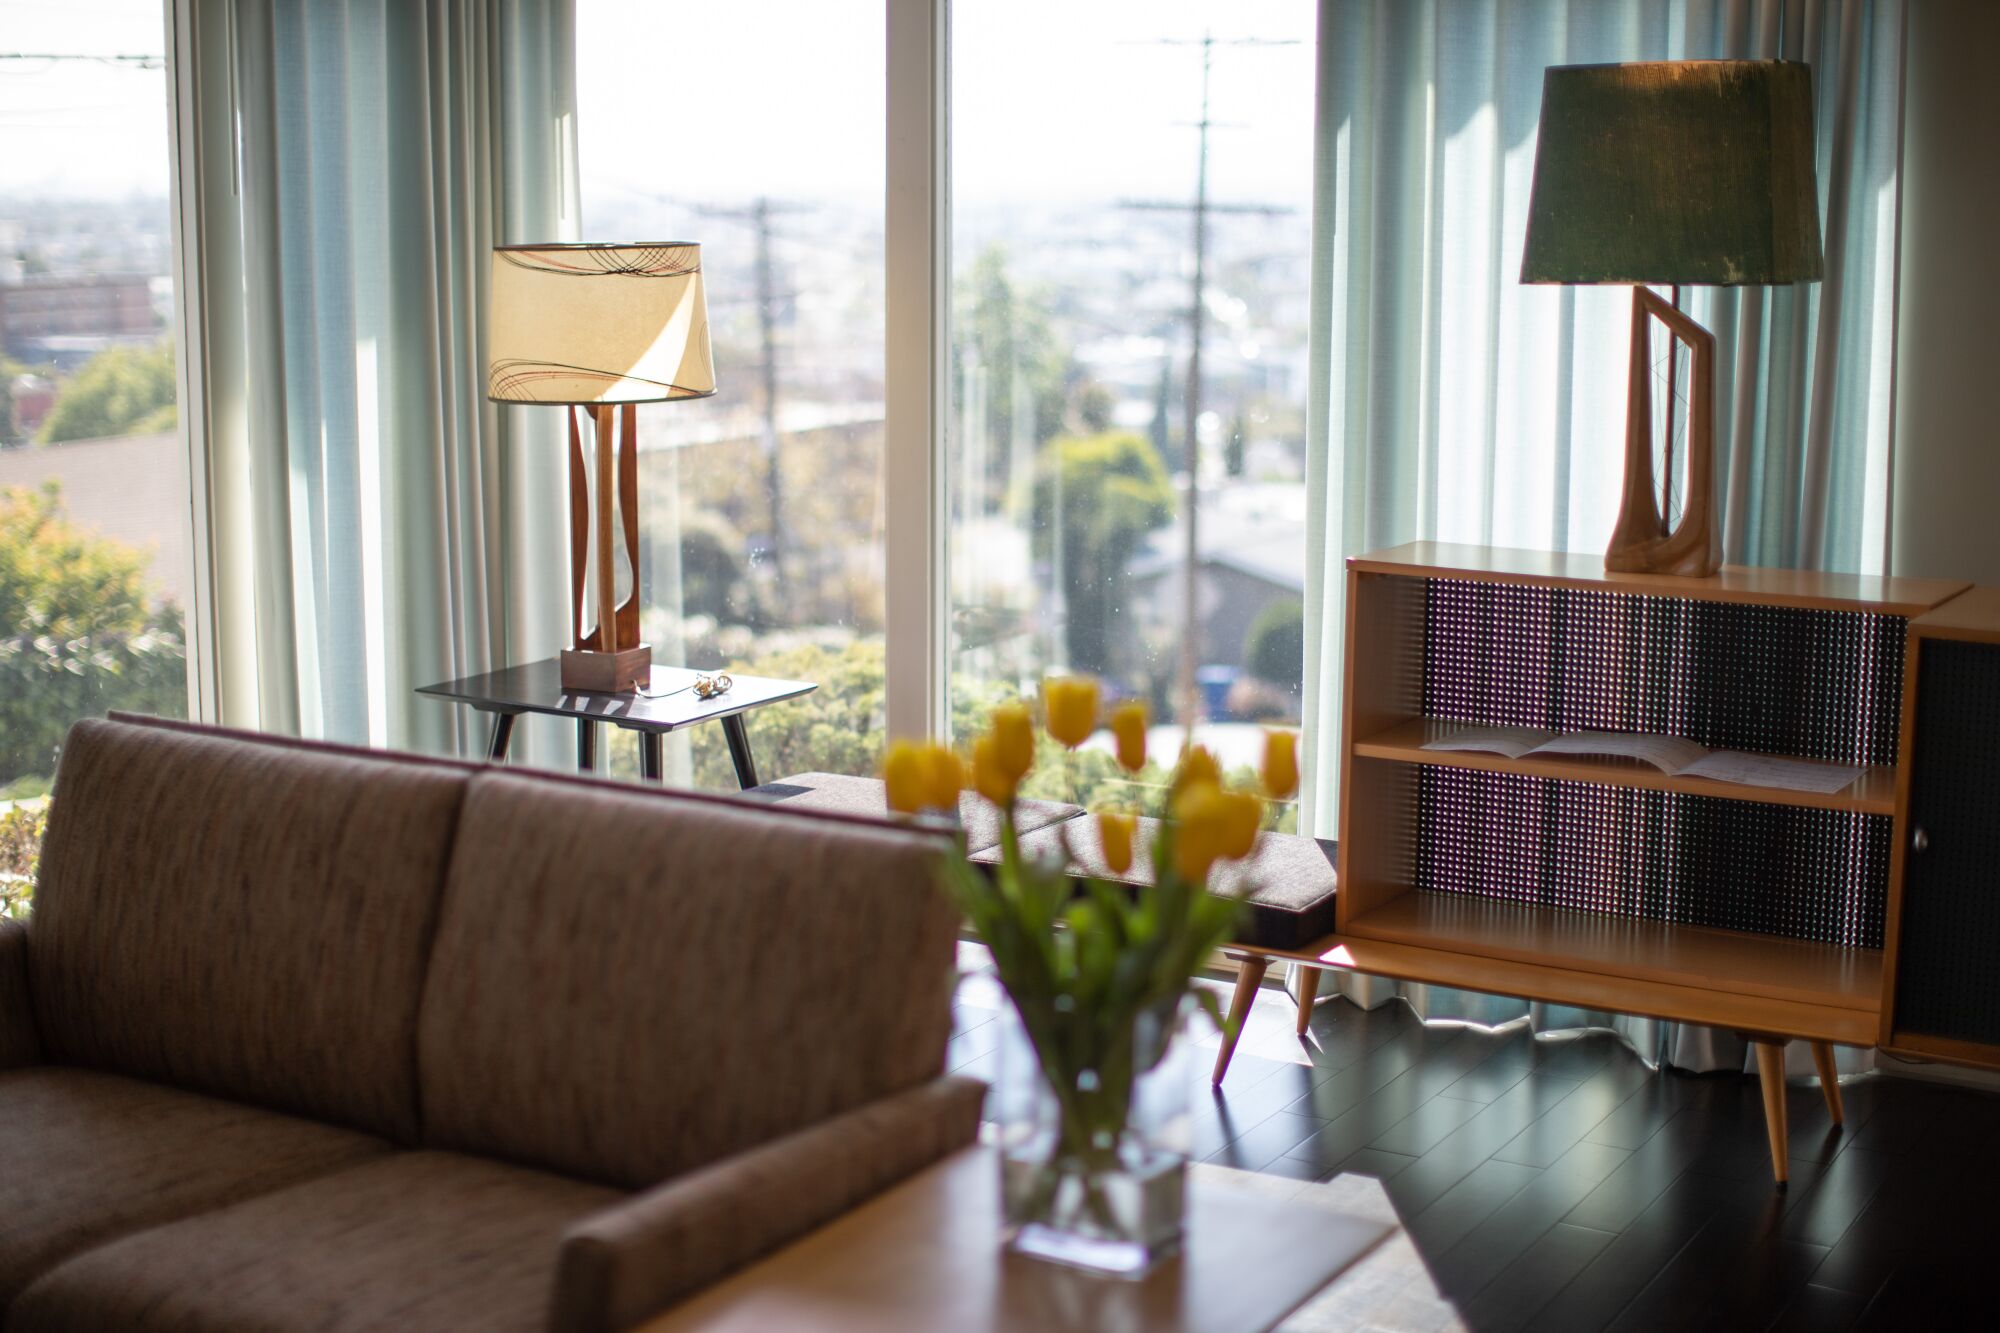 تحتوي غرفة المعيشة العصرية على مصباحين يستريحان ، على التوالي ، على طاولة وخزانة خشبية بينما تتدفق الشمس في النافذة